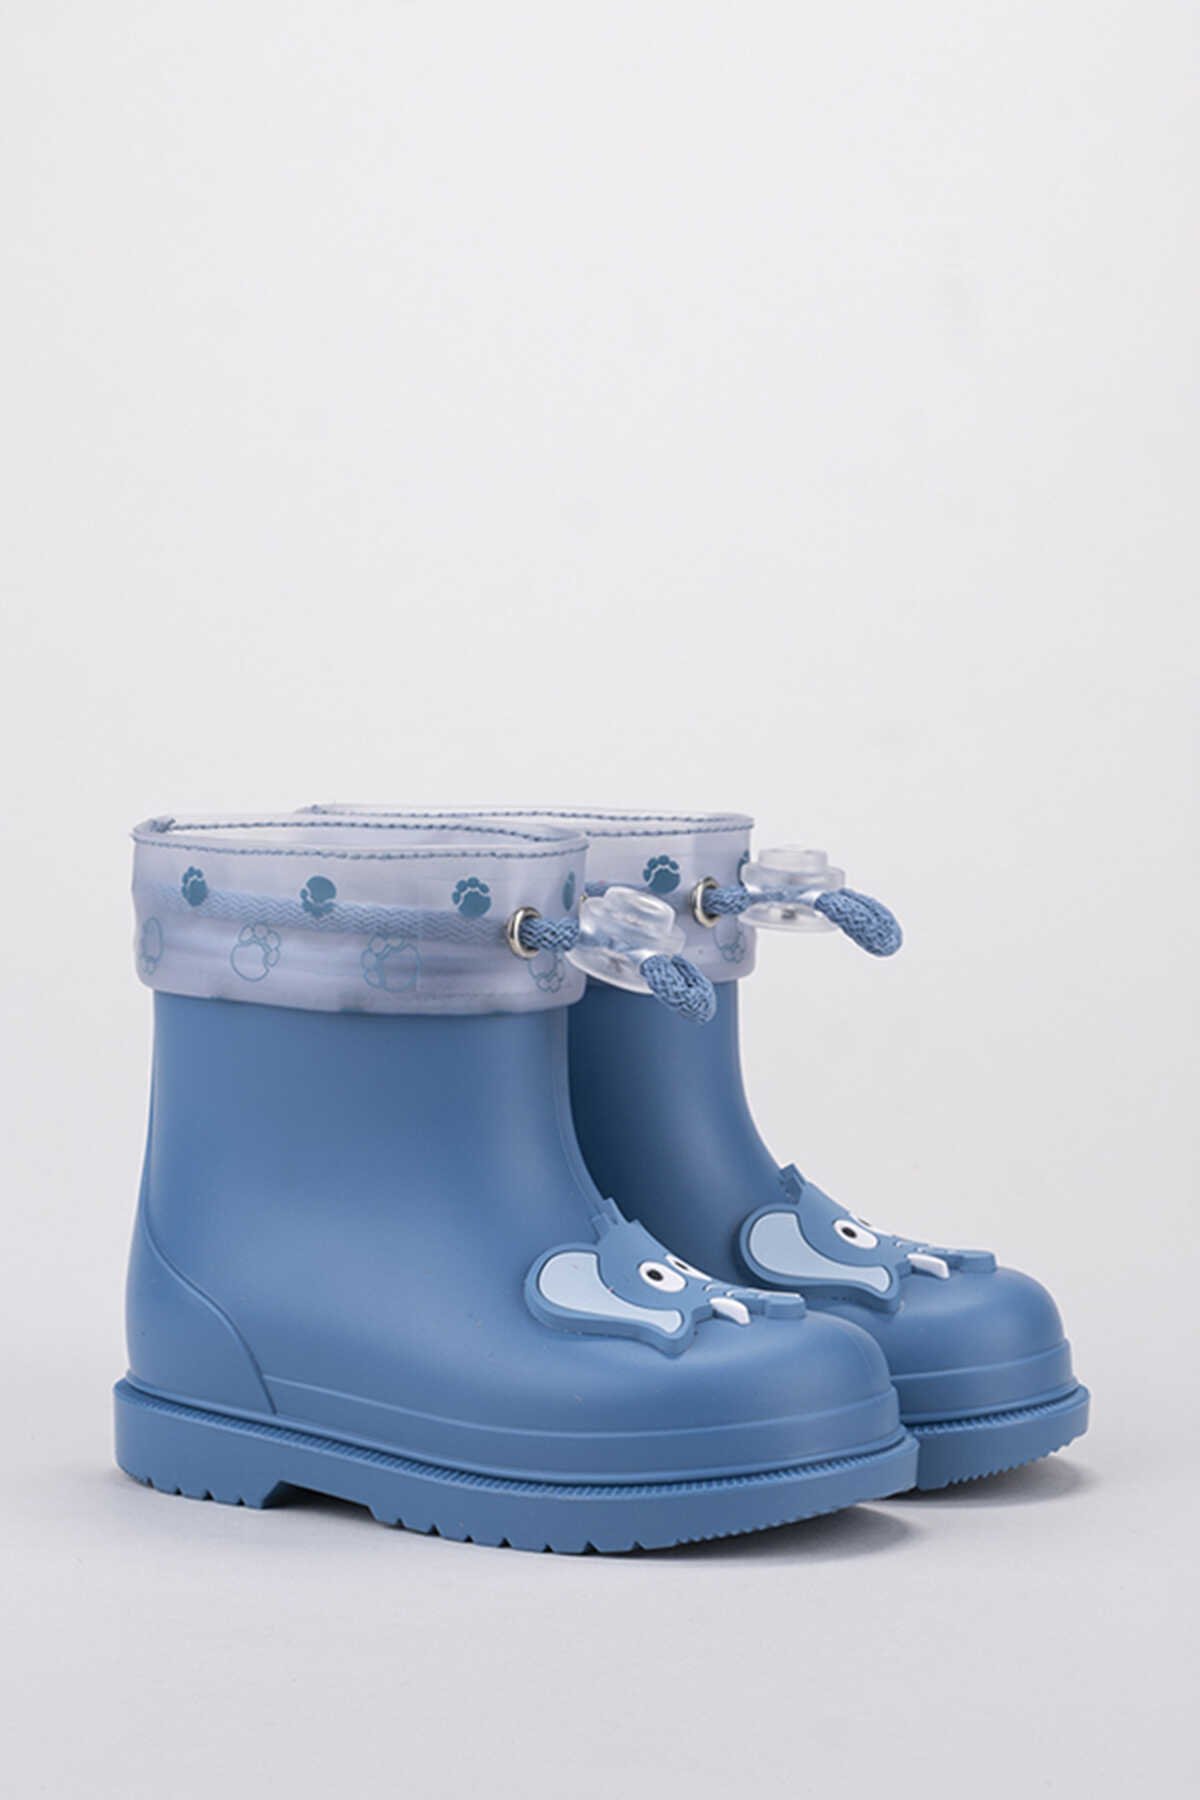 Igor - Igor BIMBI ELEFANTE Yağmur Çizmesi Kız Çocuk Ayakkabı Açık Mavi